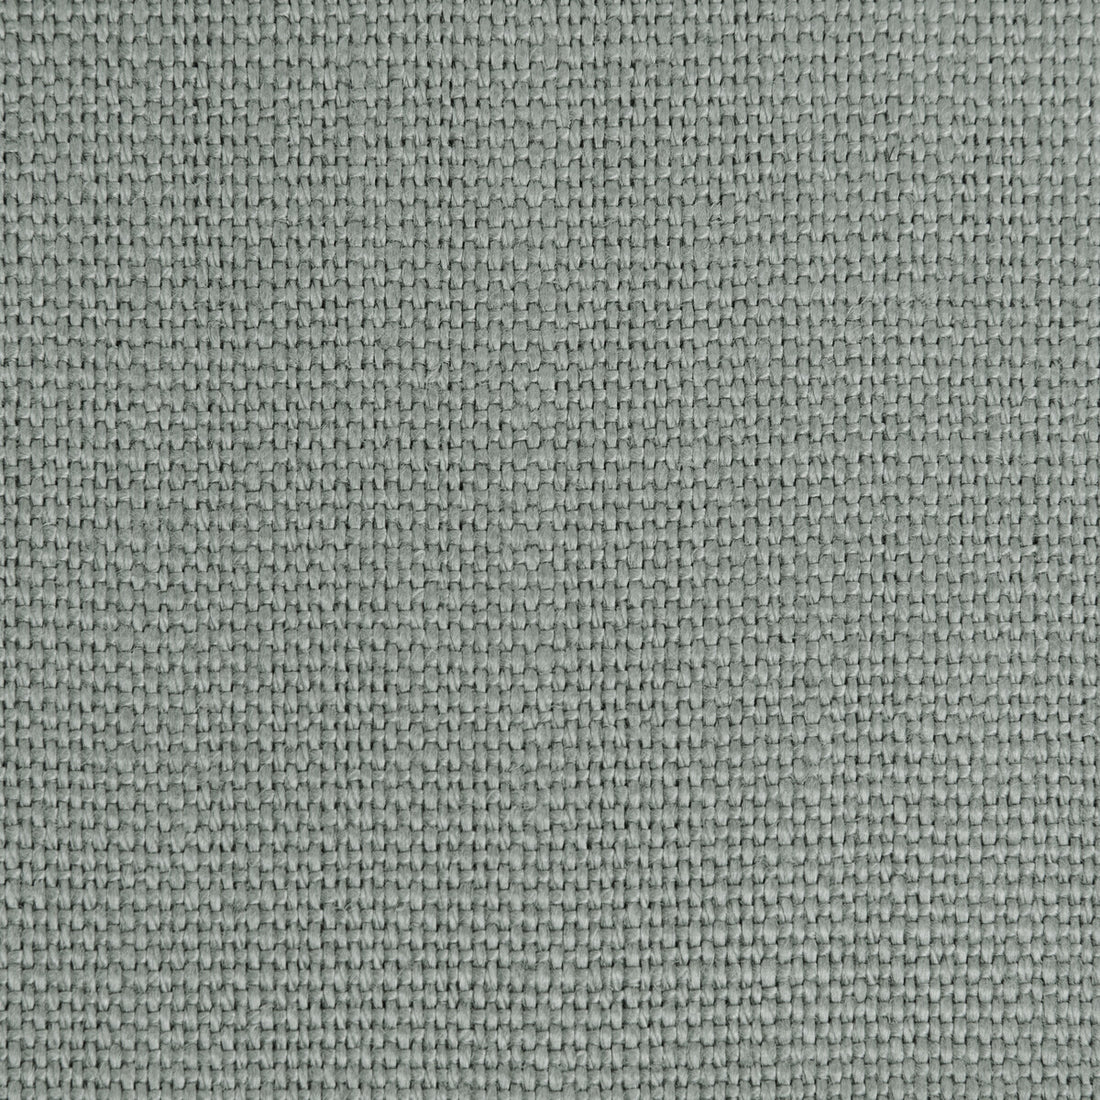 Stone Harbor fabric in whisper color - pattern 27591.1122.0 - by Kravet Basics